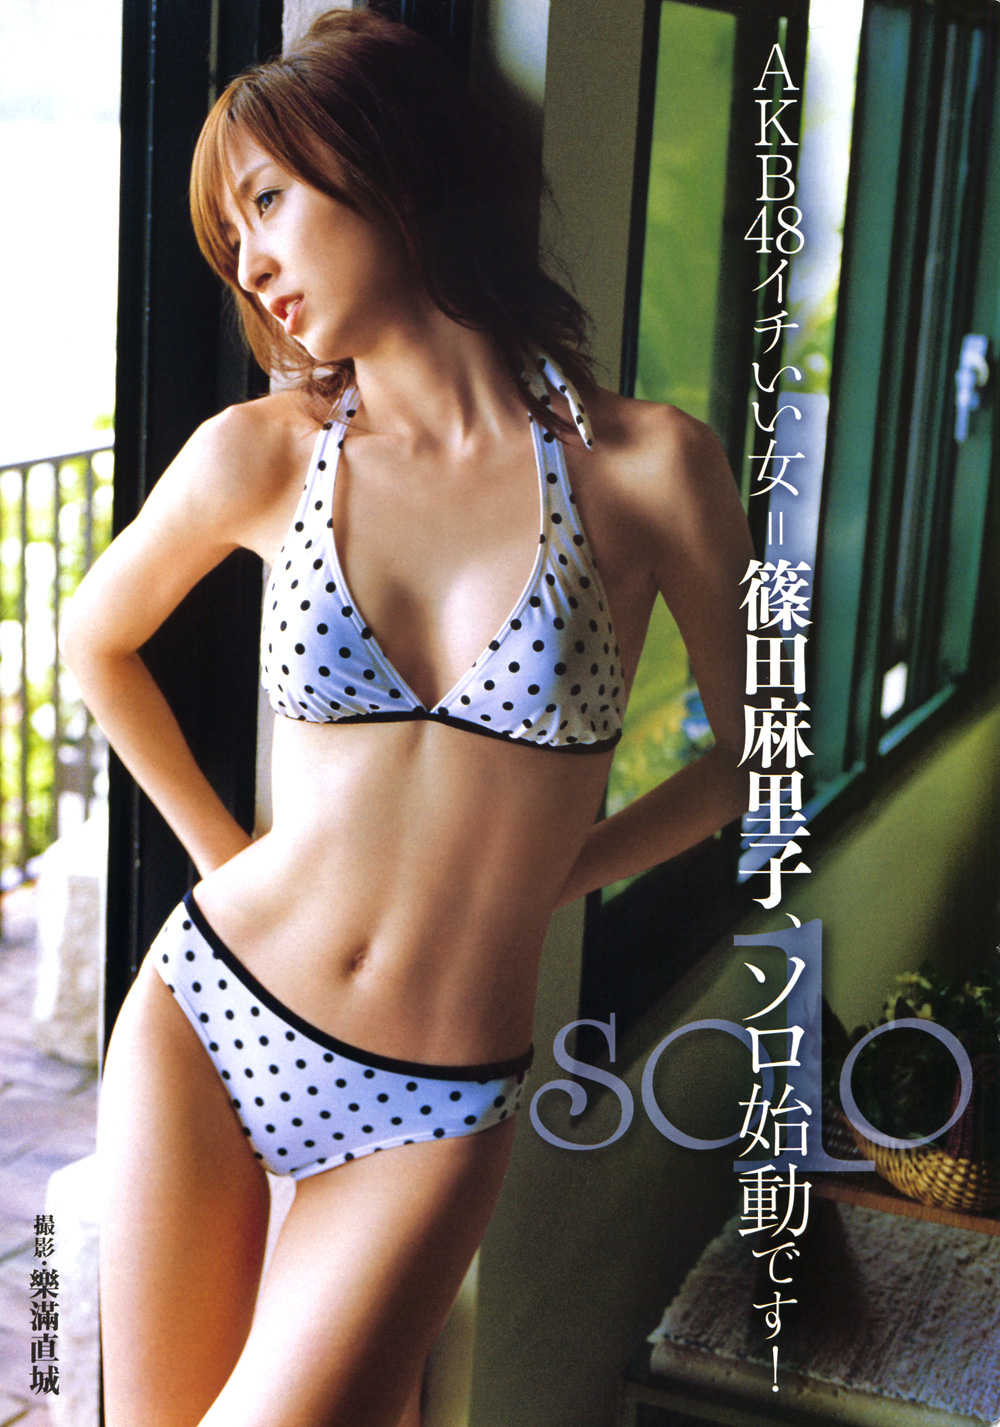 Mariko Magazine 04